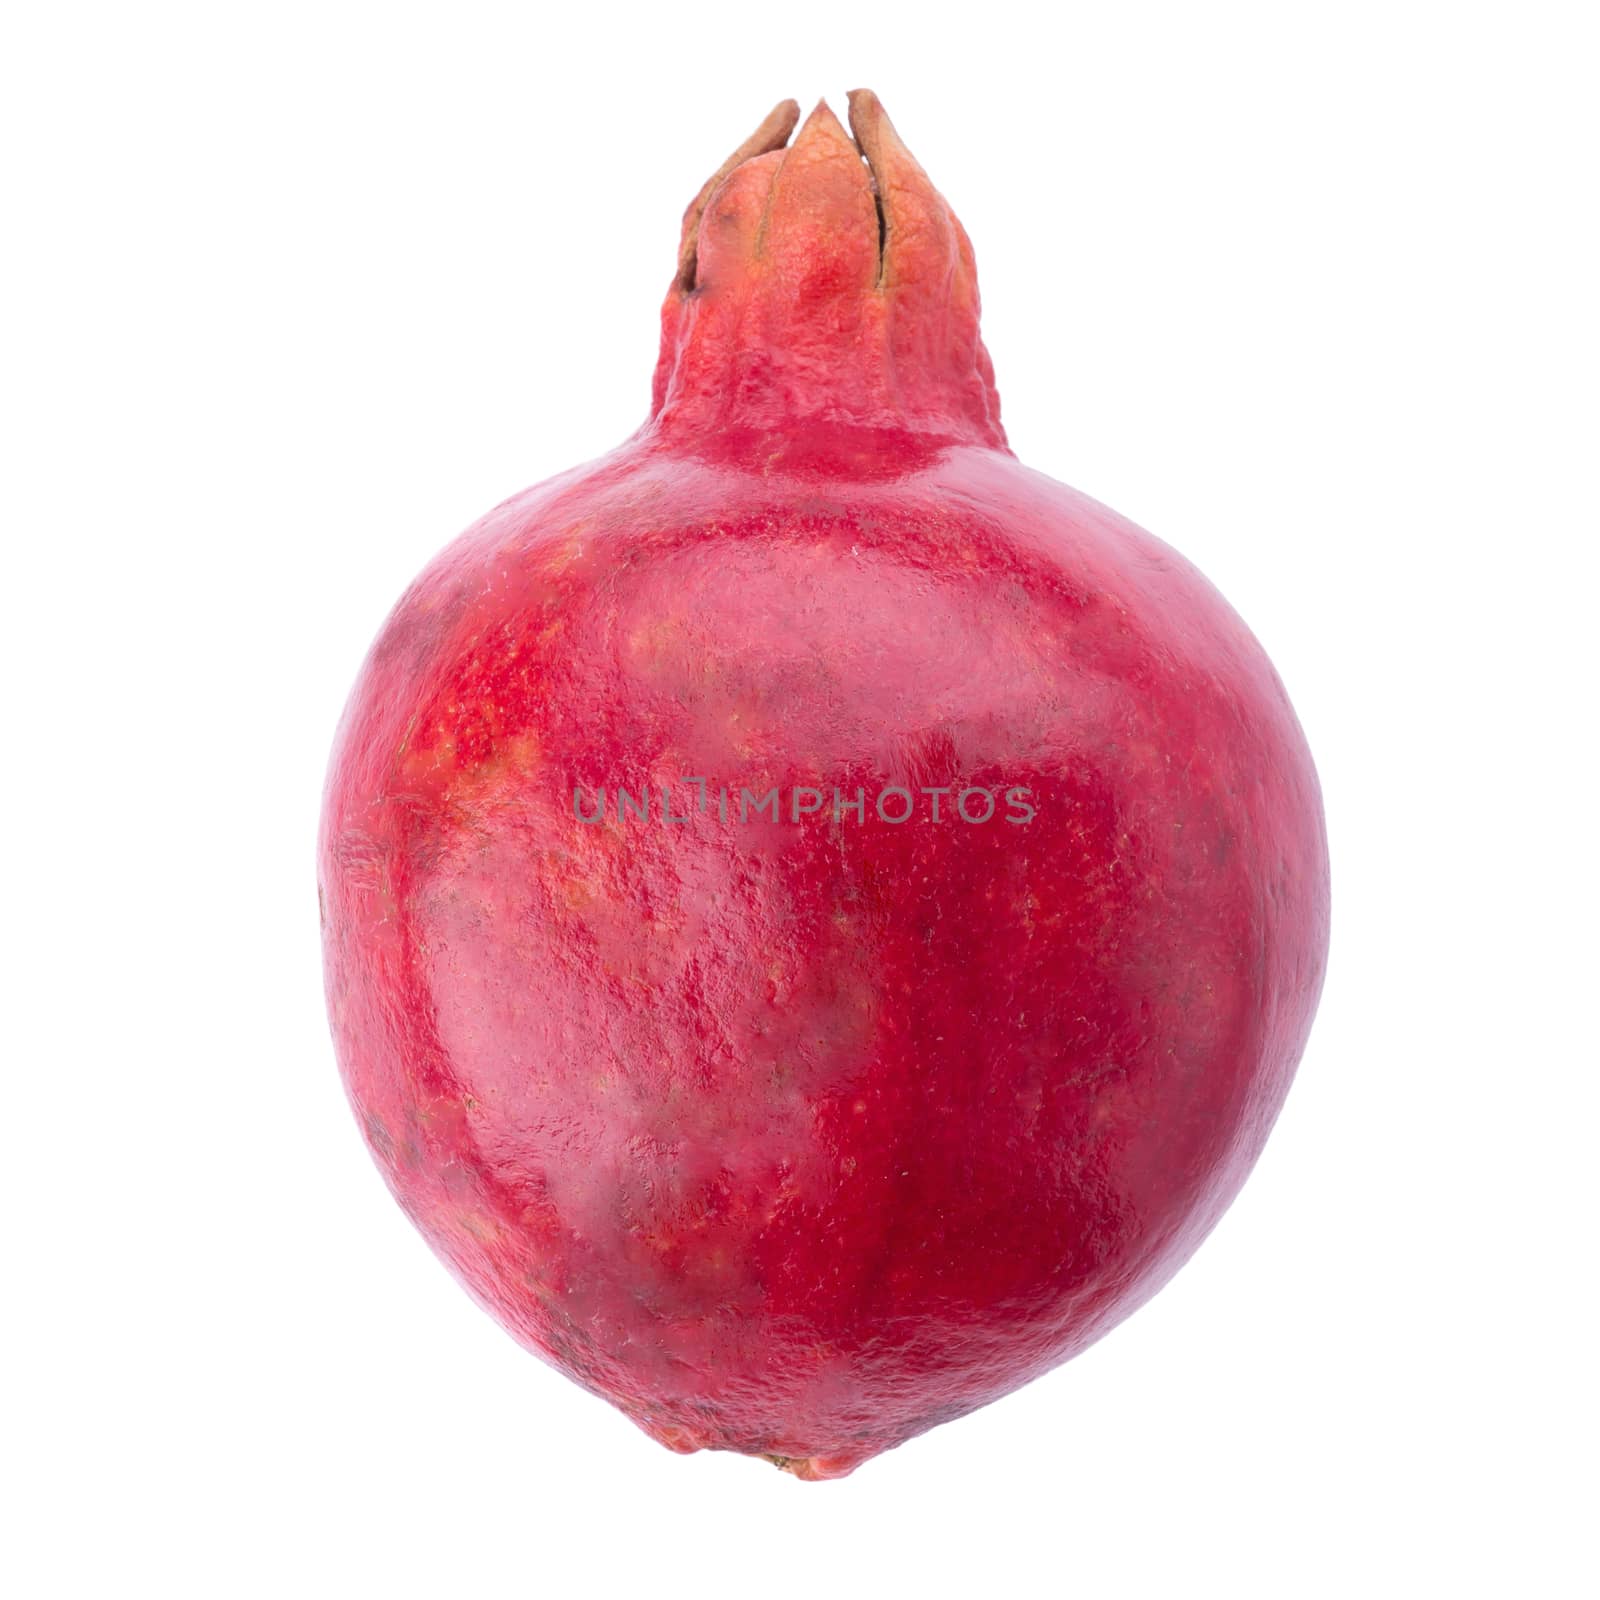 Ripe pomegranate fruit isolated on white background.